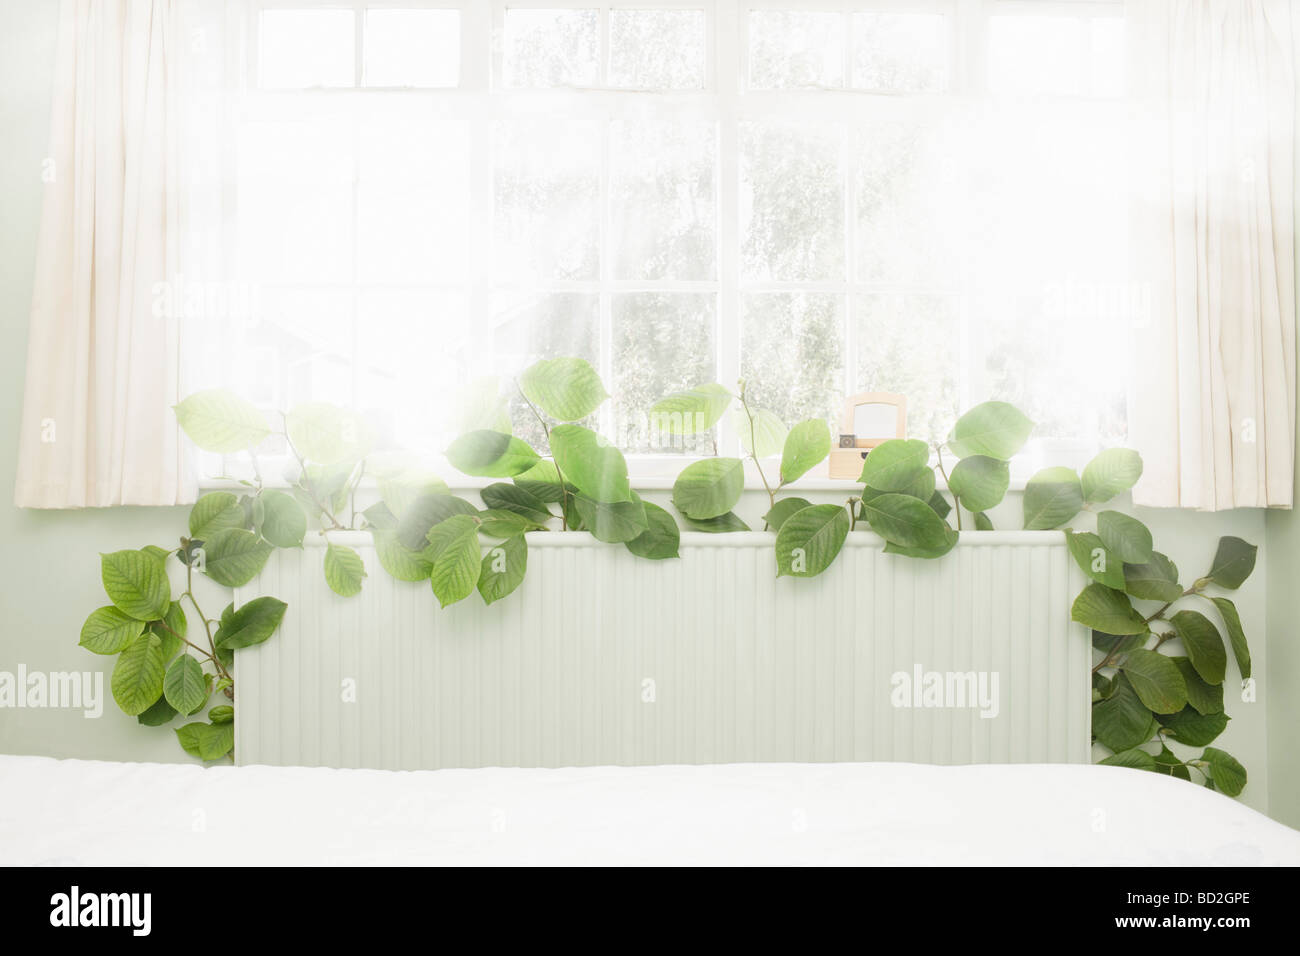 La germination du radiateur de la végétation verte Banque D'Images